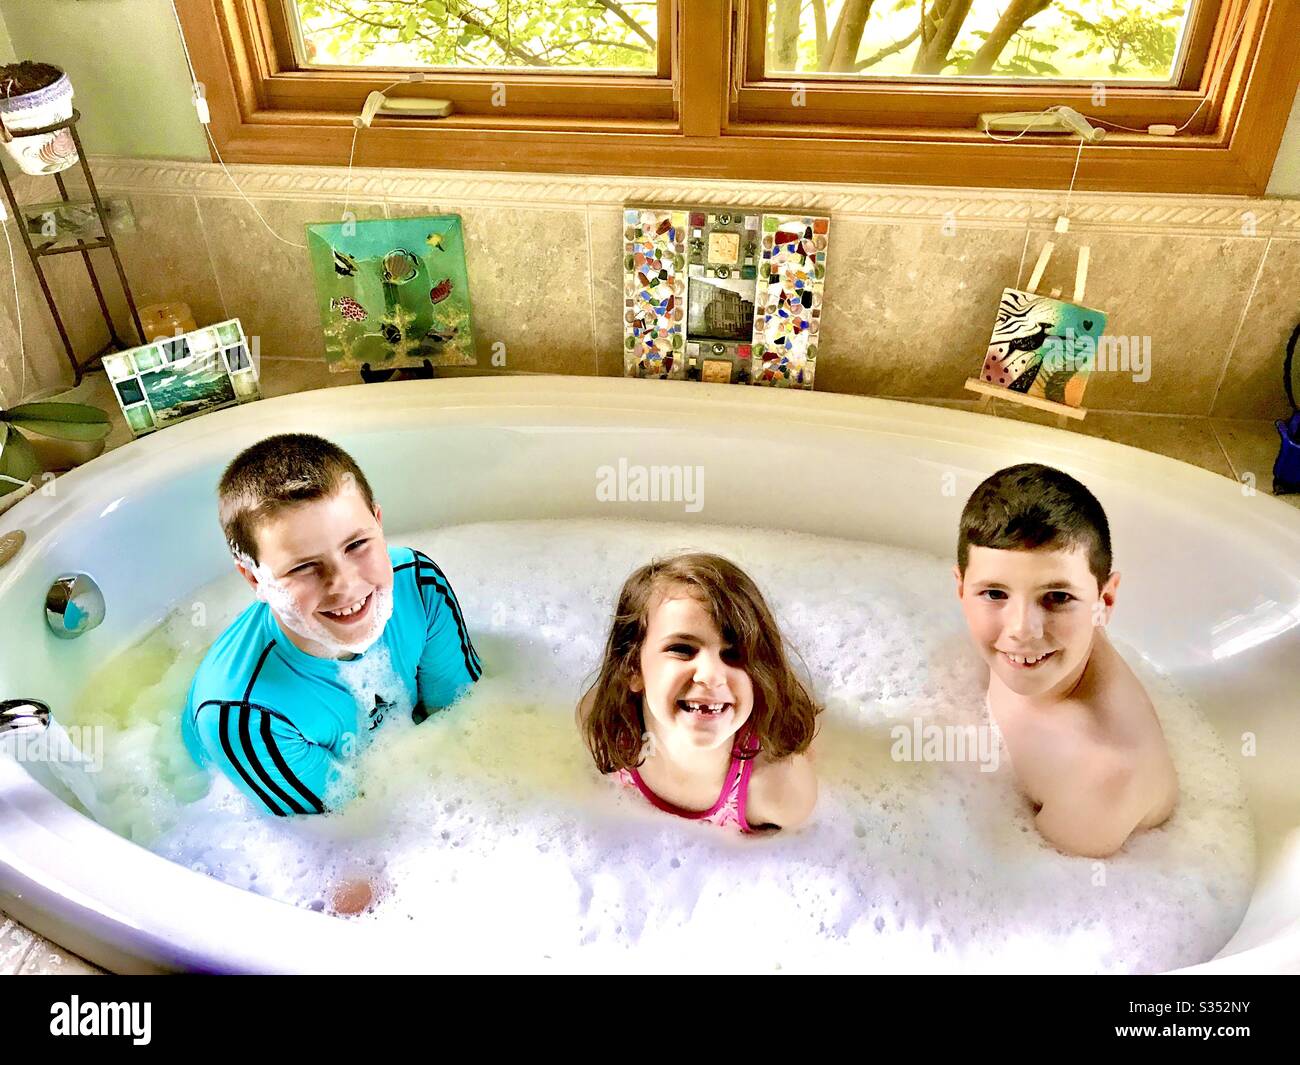 Trois enfants dans un bain Banque D'Images